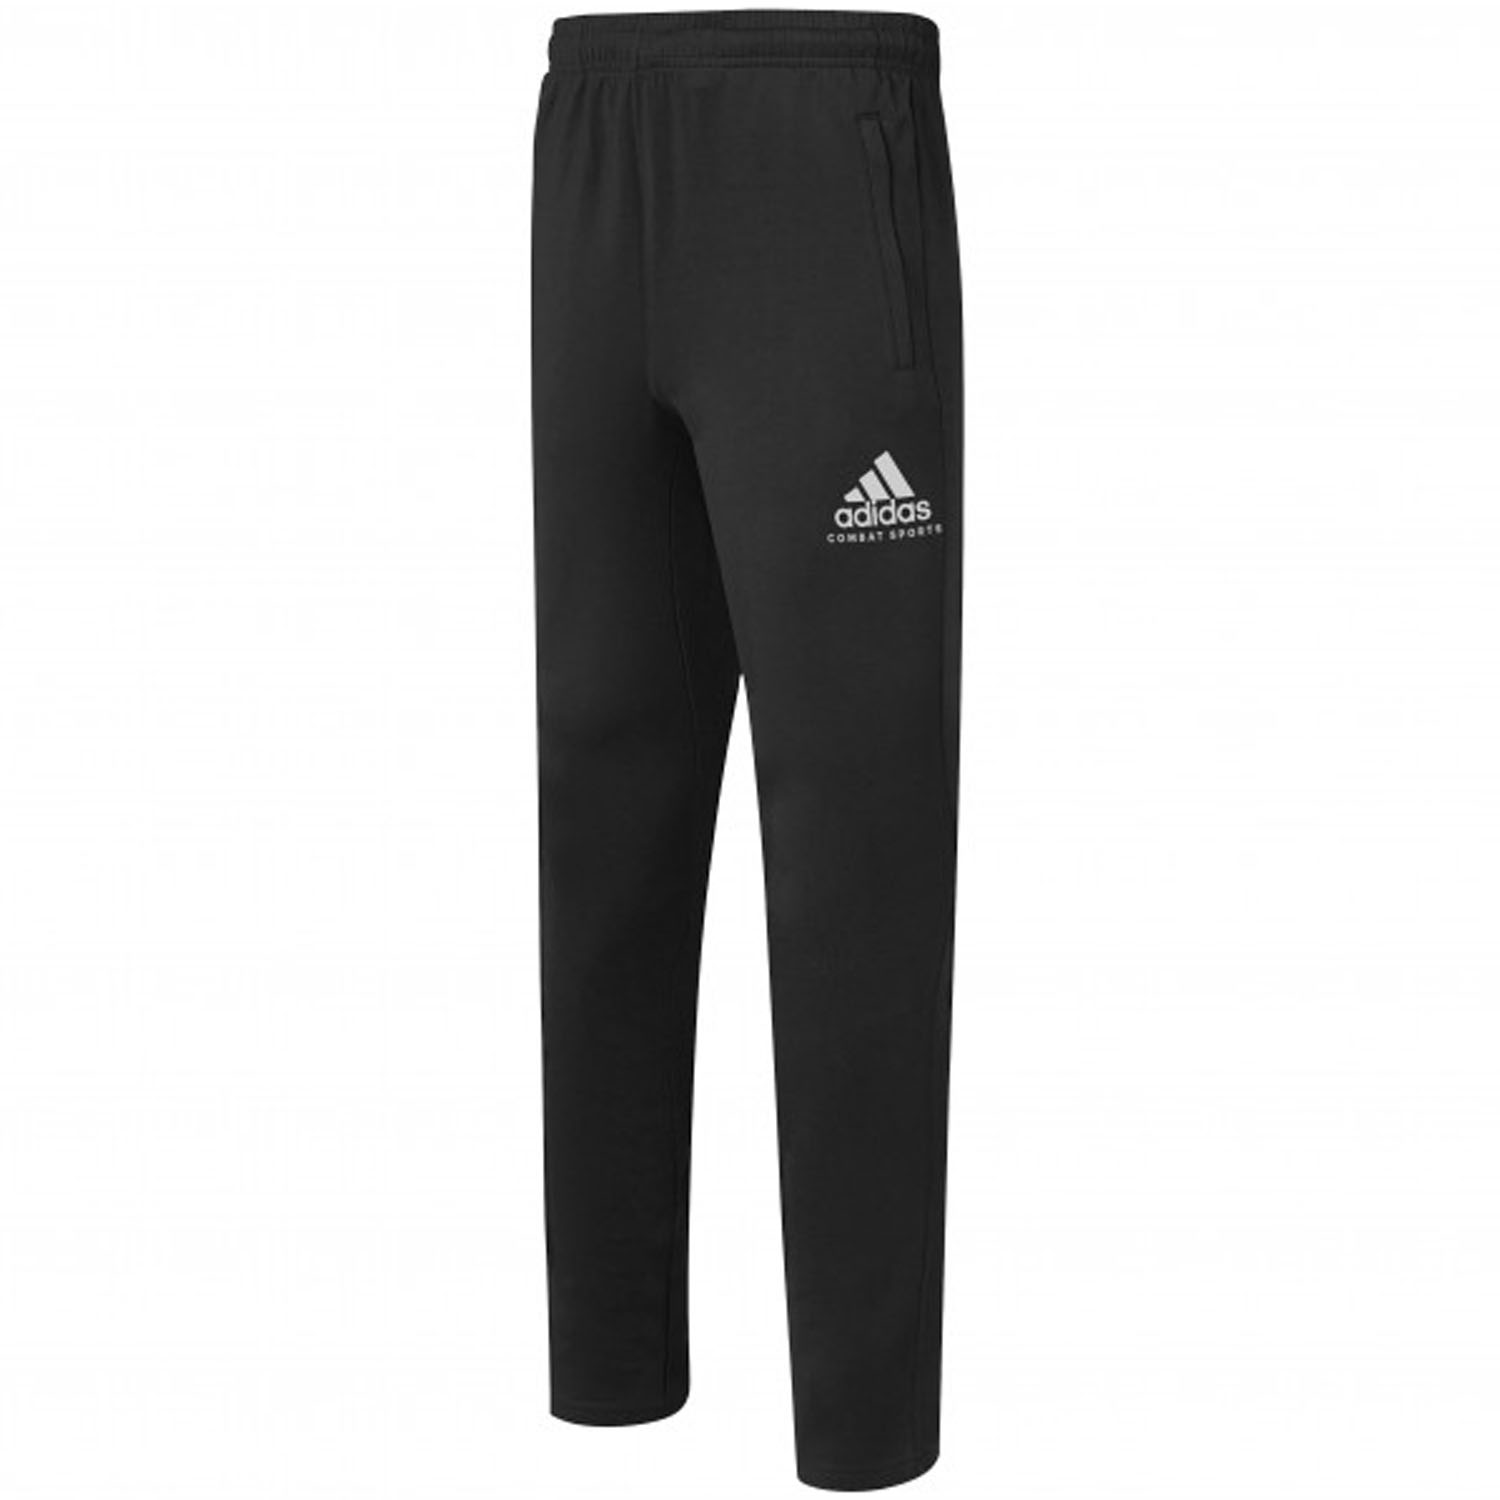 adidas Jogging Pants, Combat Sports, black, XL